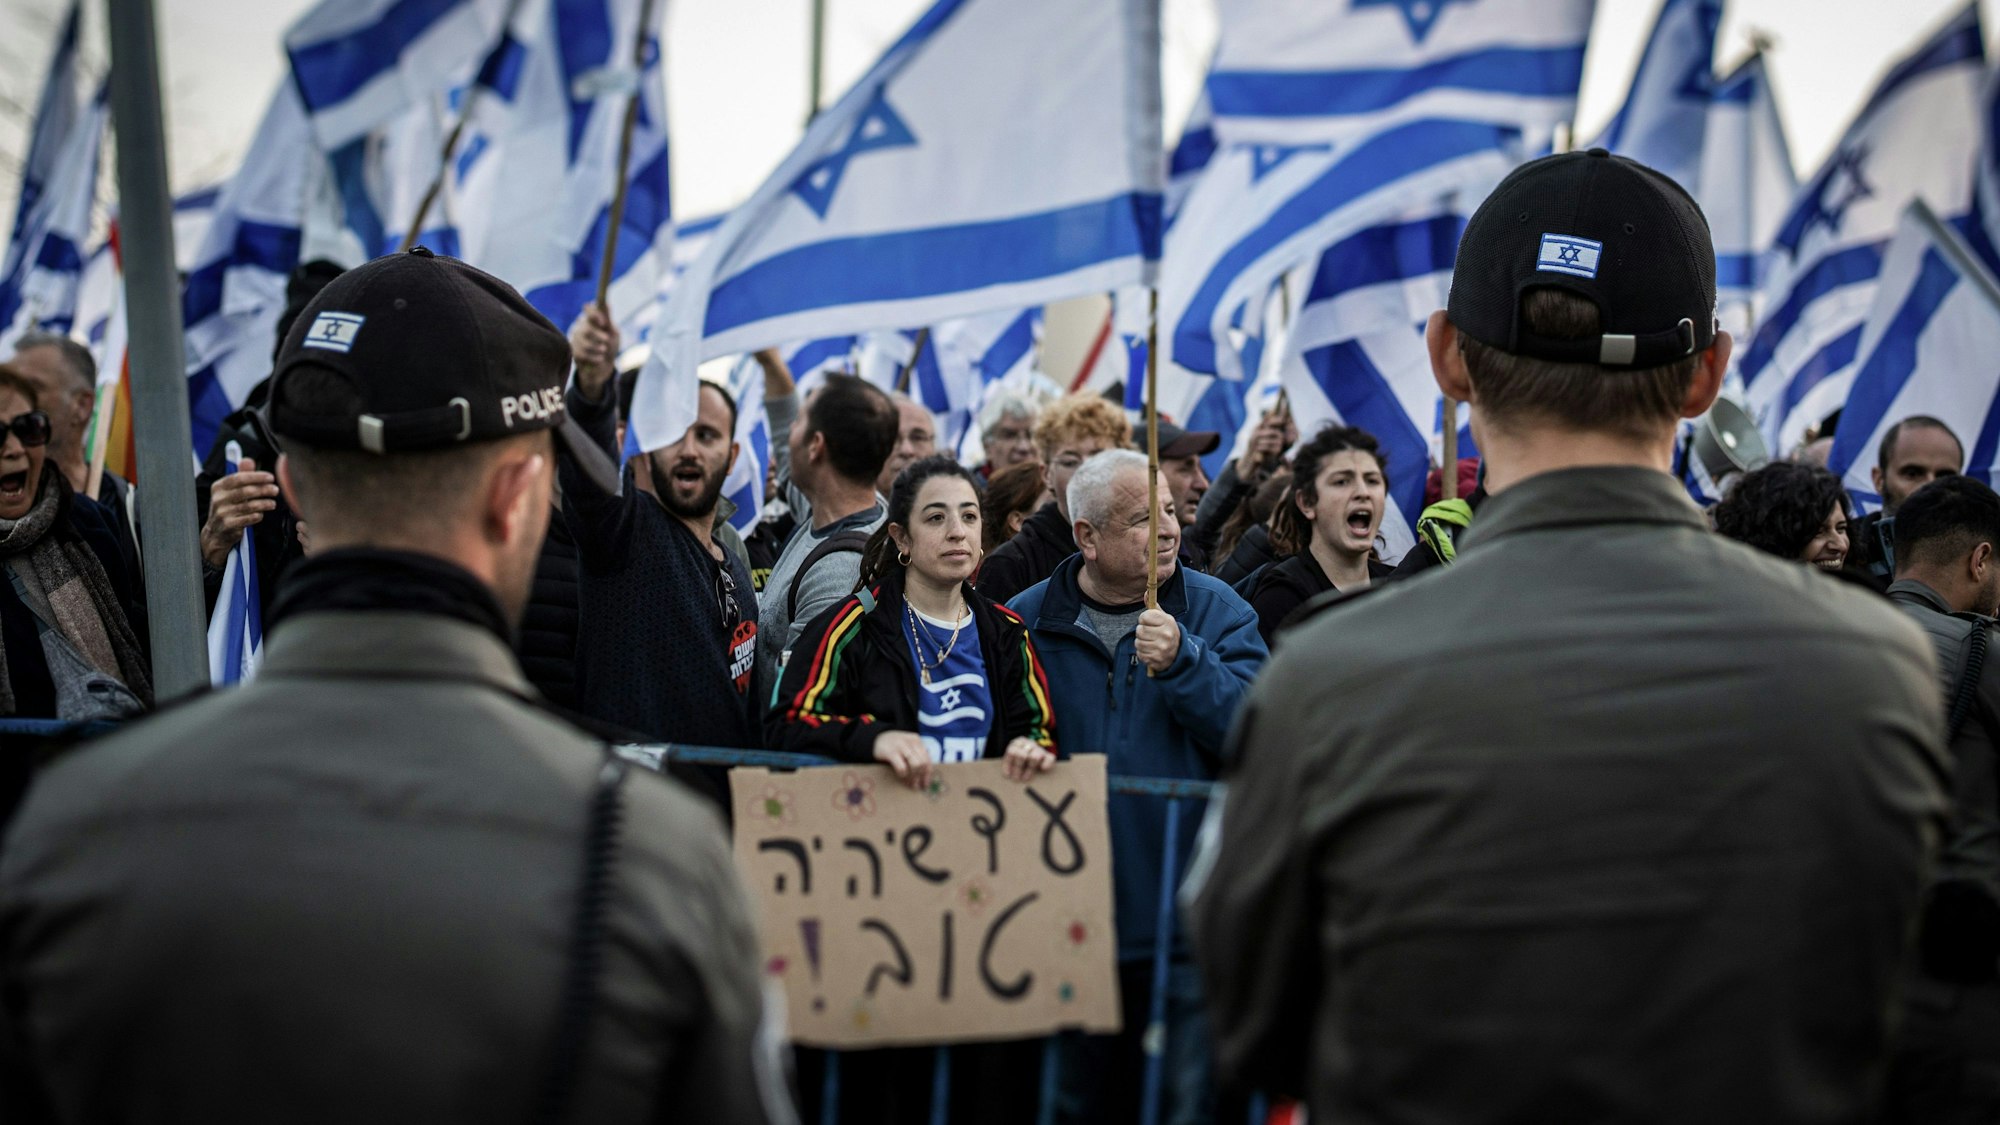 20.02.2023, Israel, Jerusalem: Demonstranten tragen israelische Fahnen während eines Protests